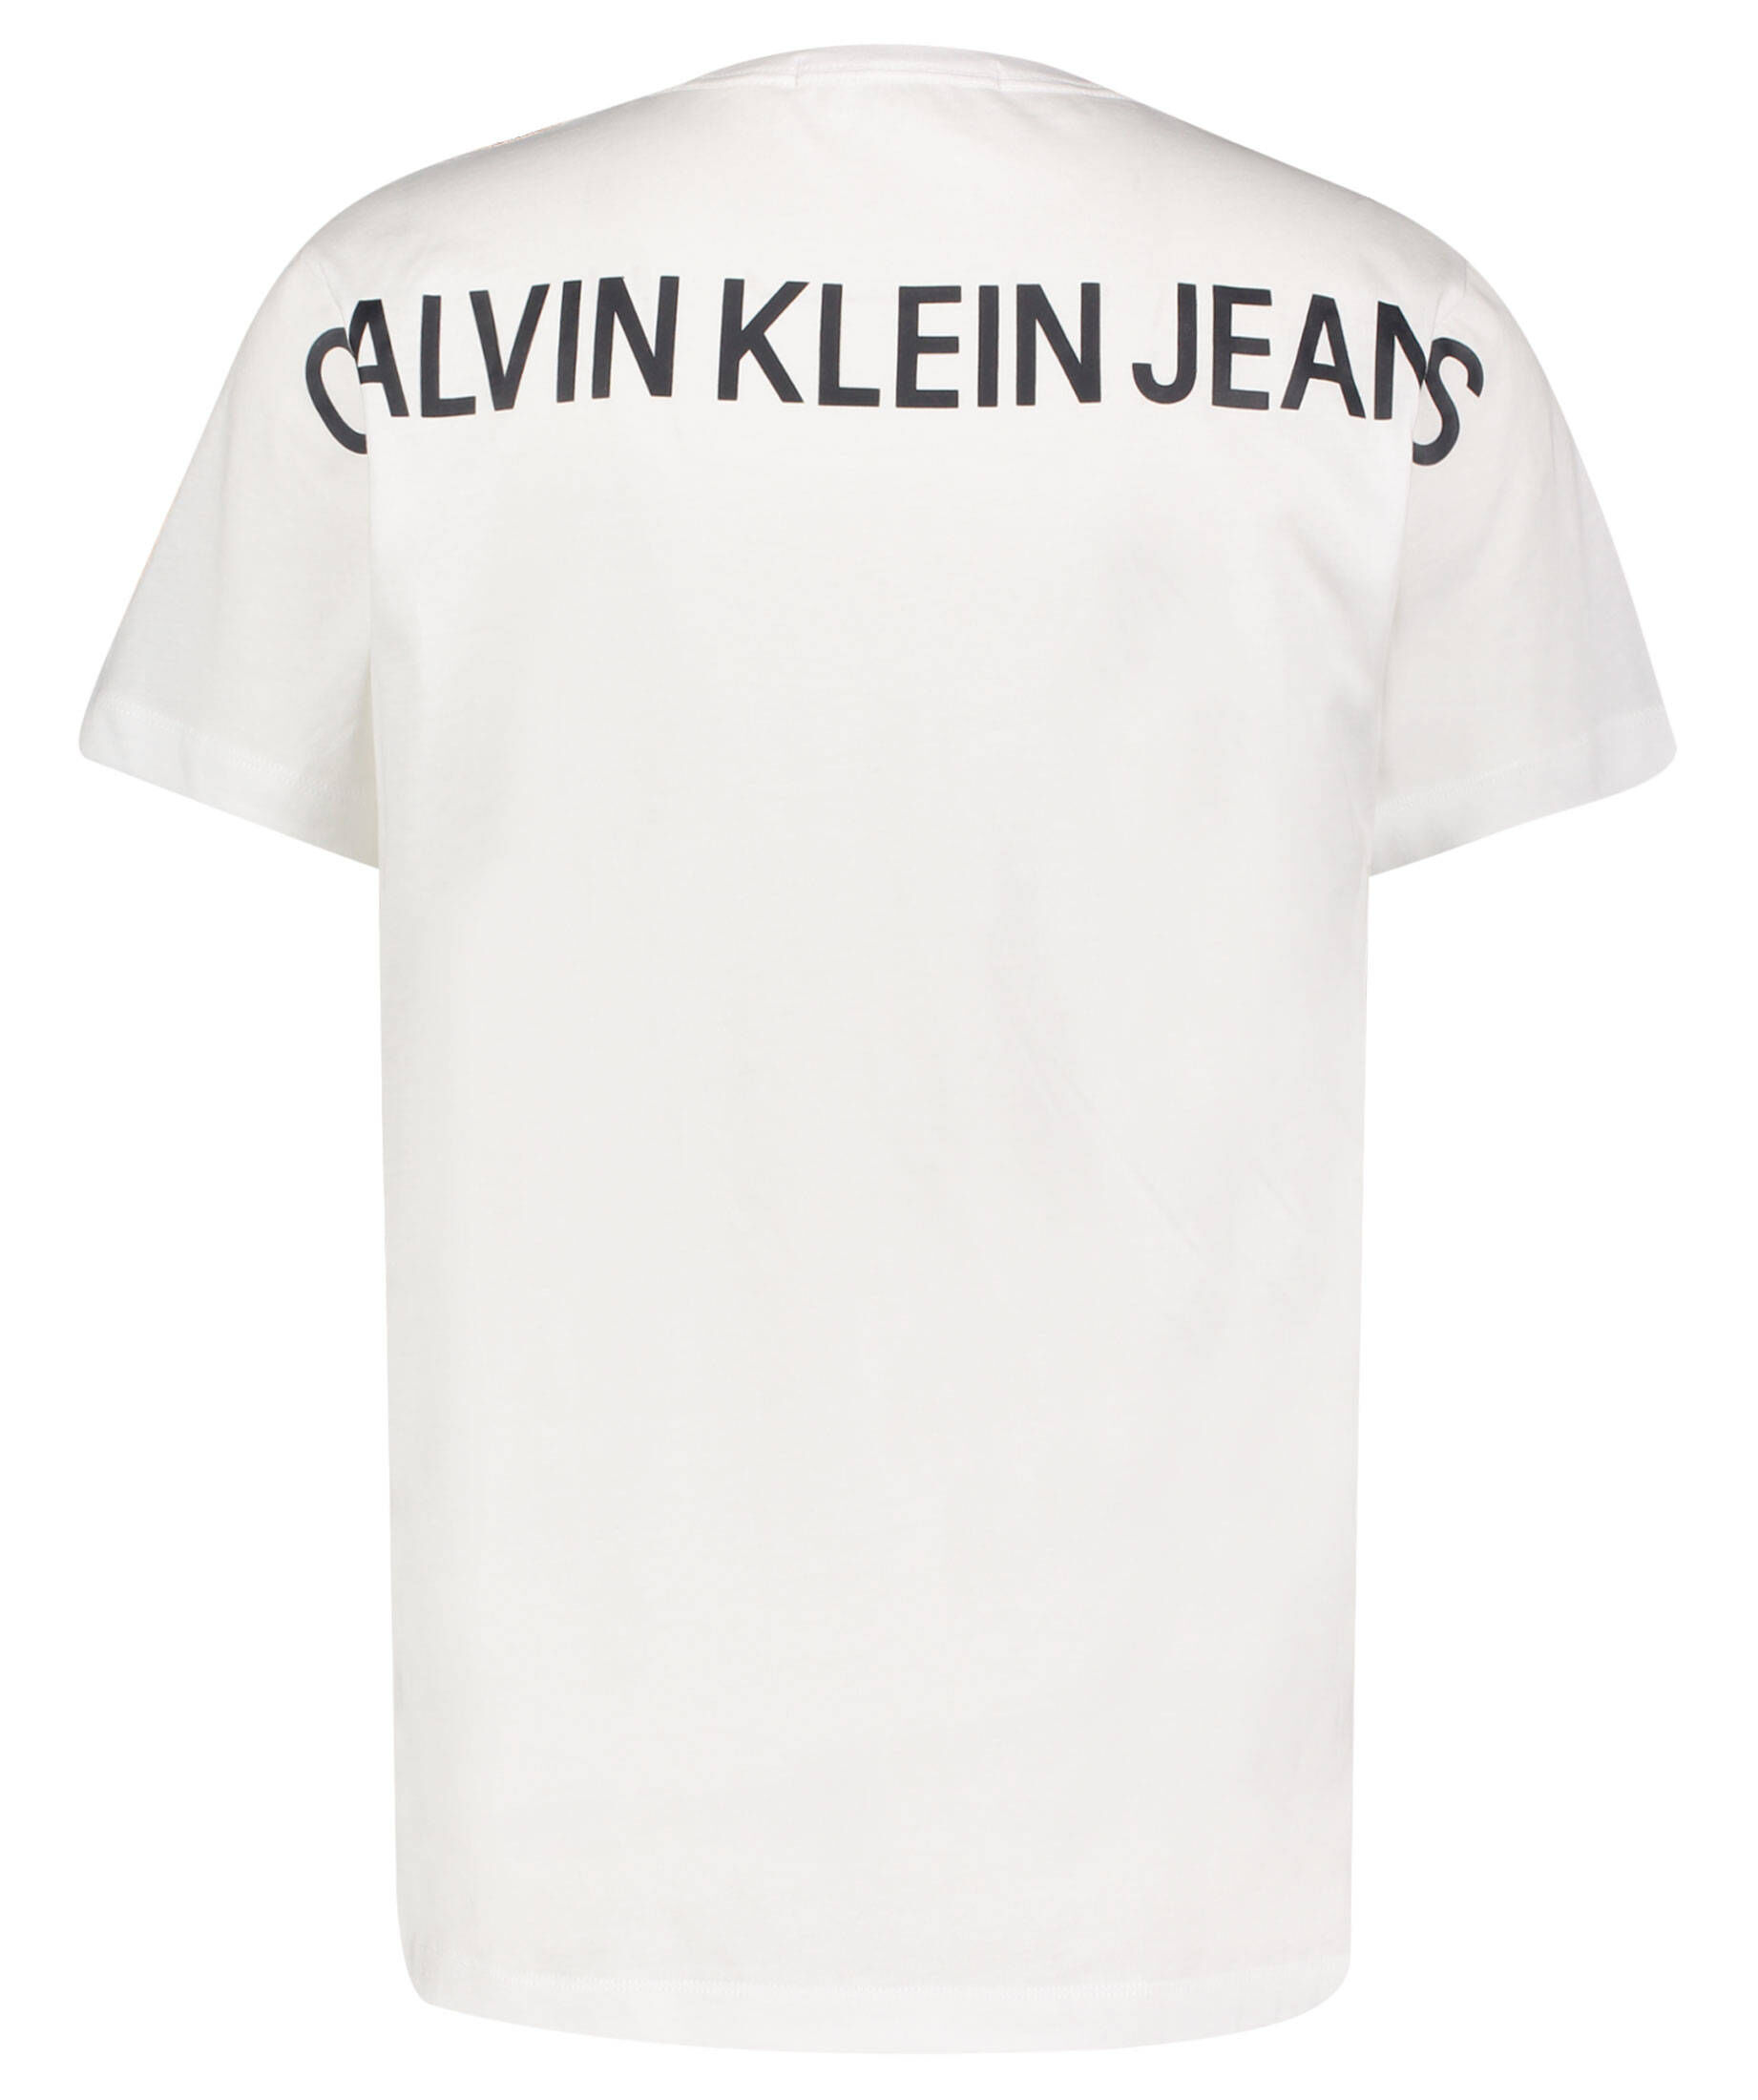 weiß T-Shirts CALVIN KLEIN 2 T-Shirts Calvin Klein Herren Herren Kleidung Calvin Klein Herren T-Shirts & Polos Calvin Klein Herren T-Shirts Calvin Klein Herren M 